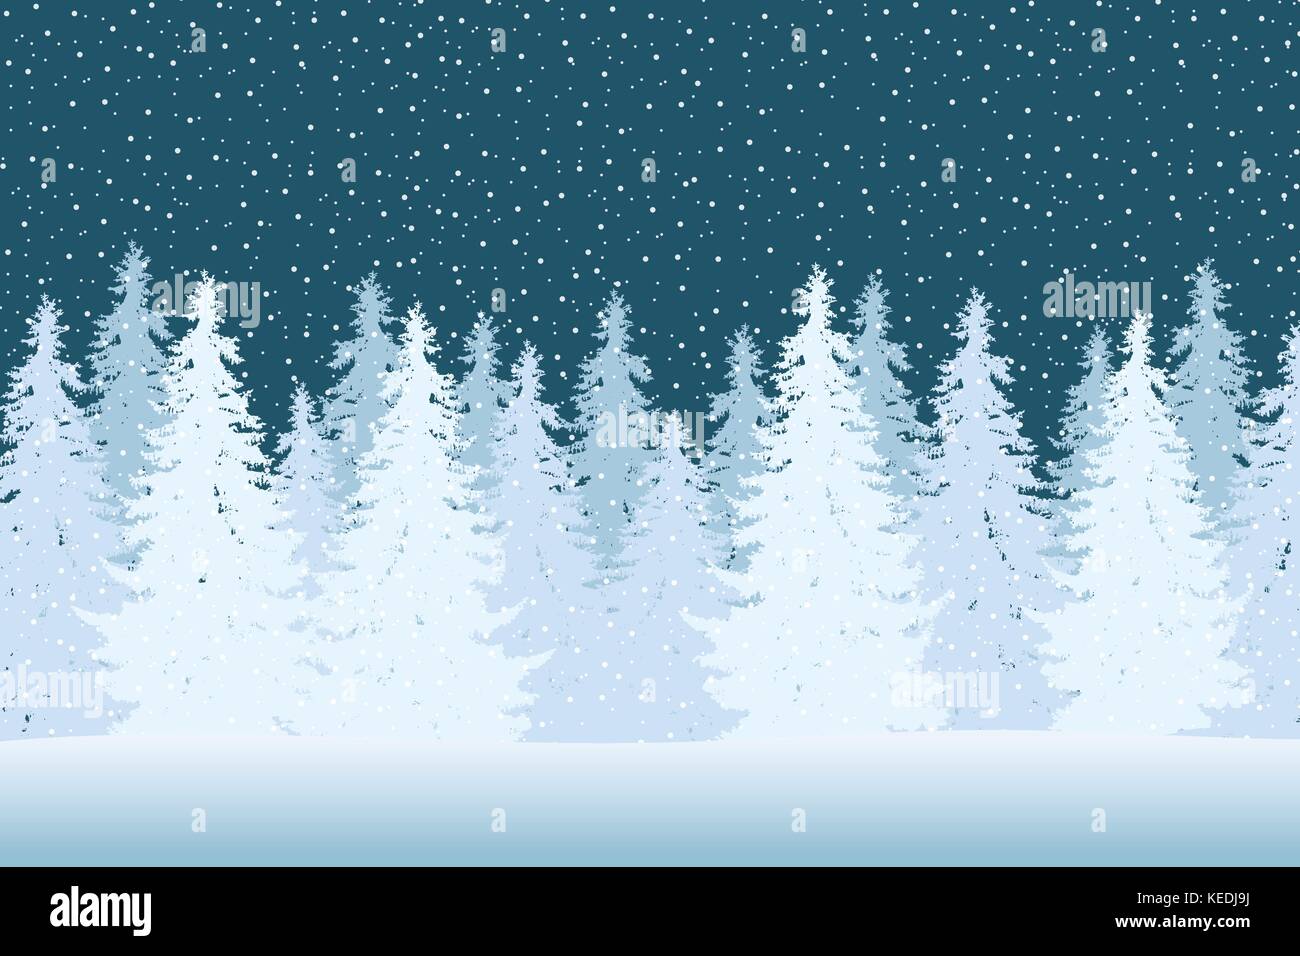 Vector Illustration eines verschneiten Winterwald mit Nadelbäumen und Schneeflocken an einem Wintertag unter blauem Himmel Stock Vektor